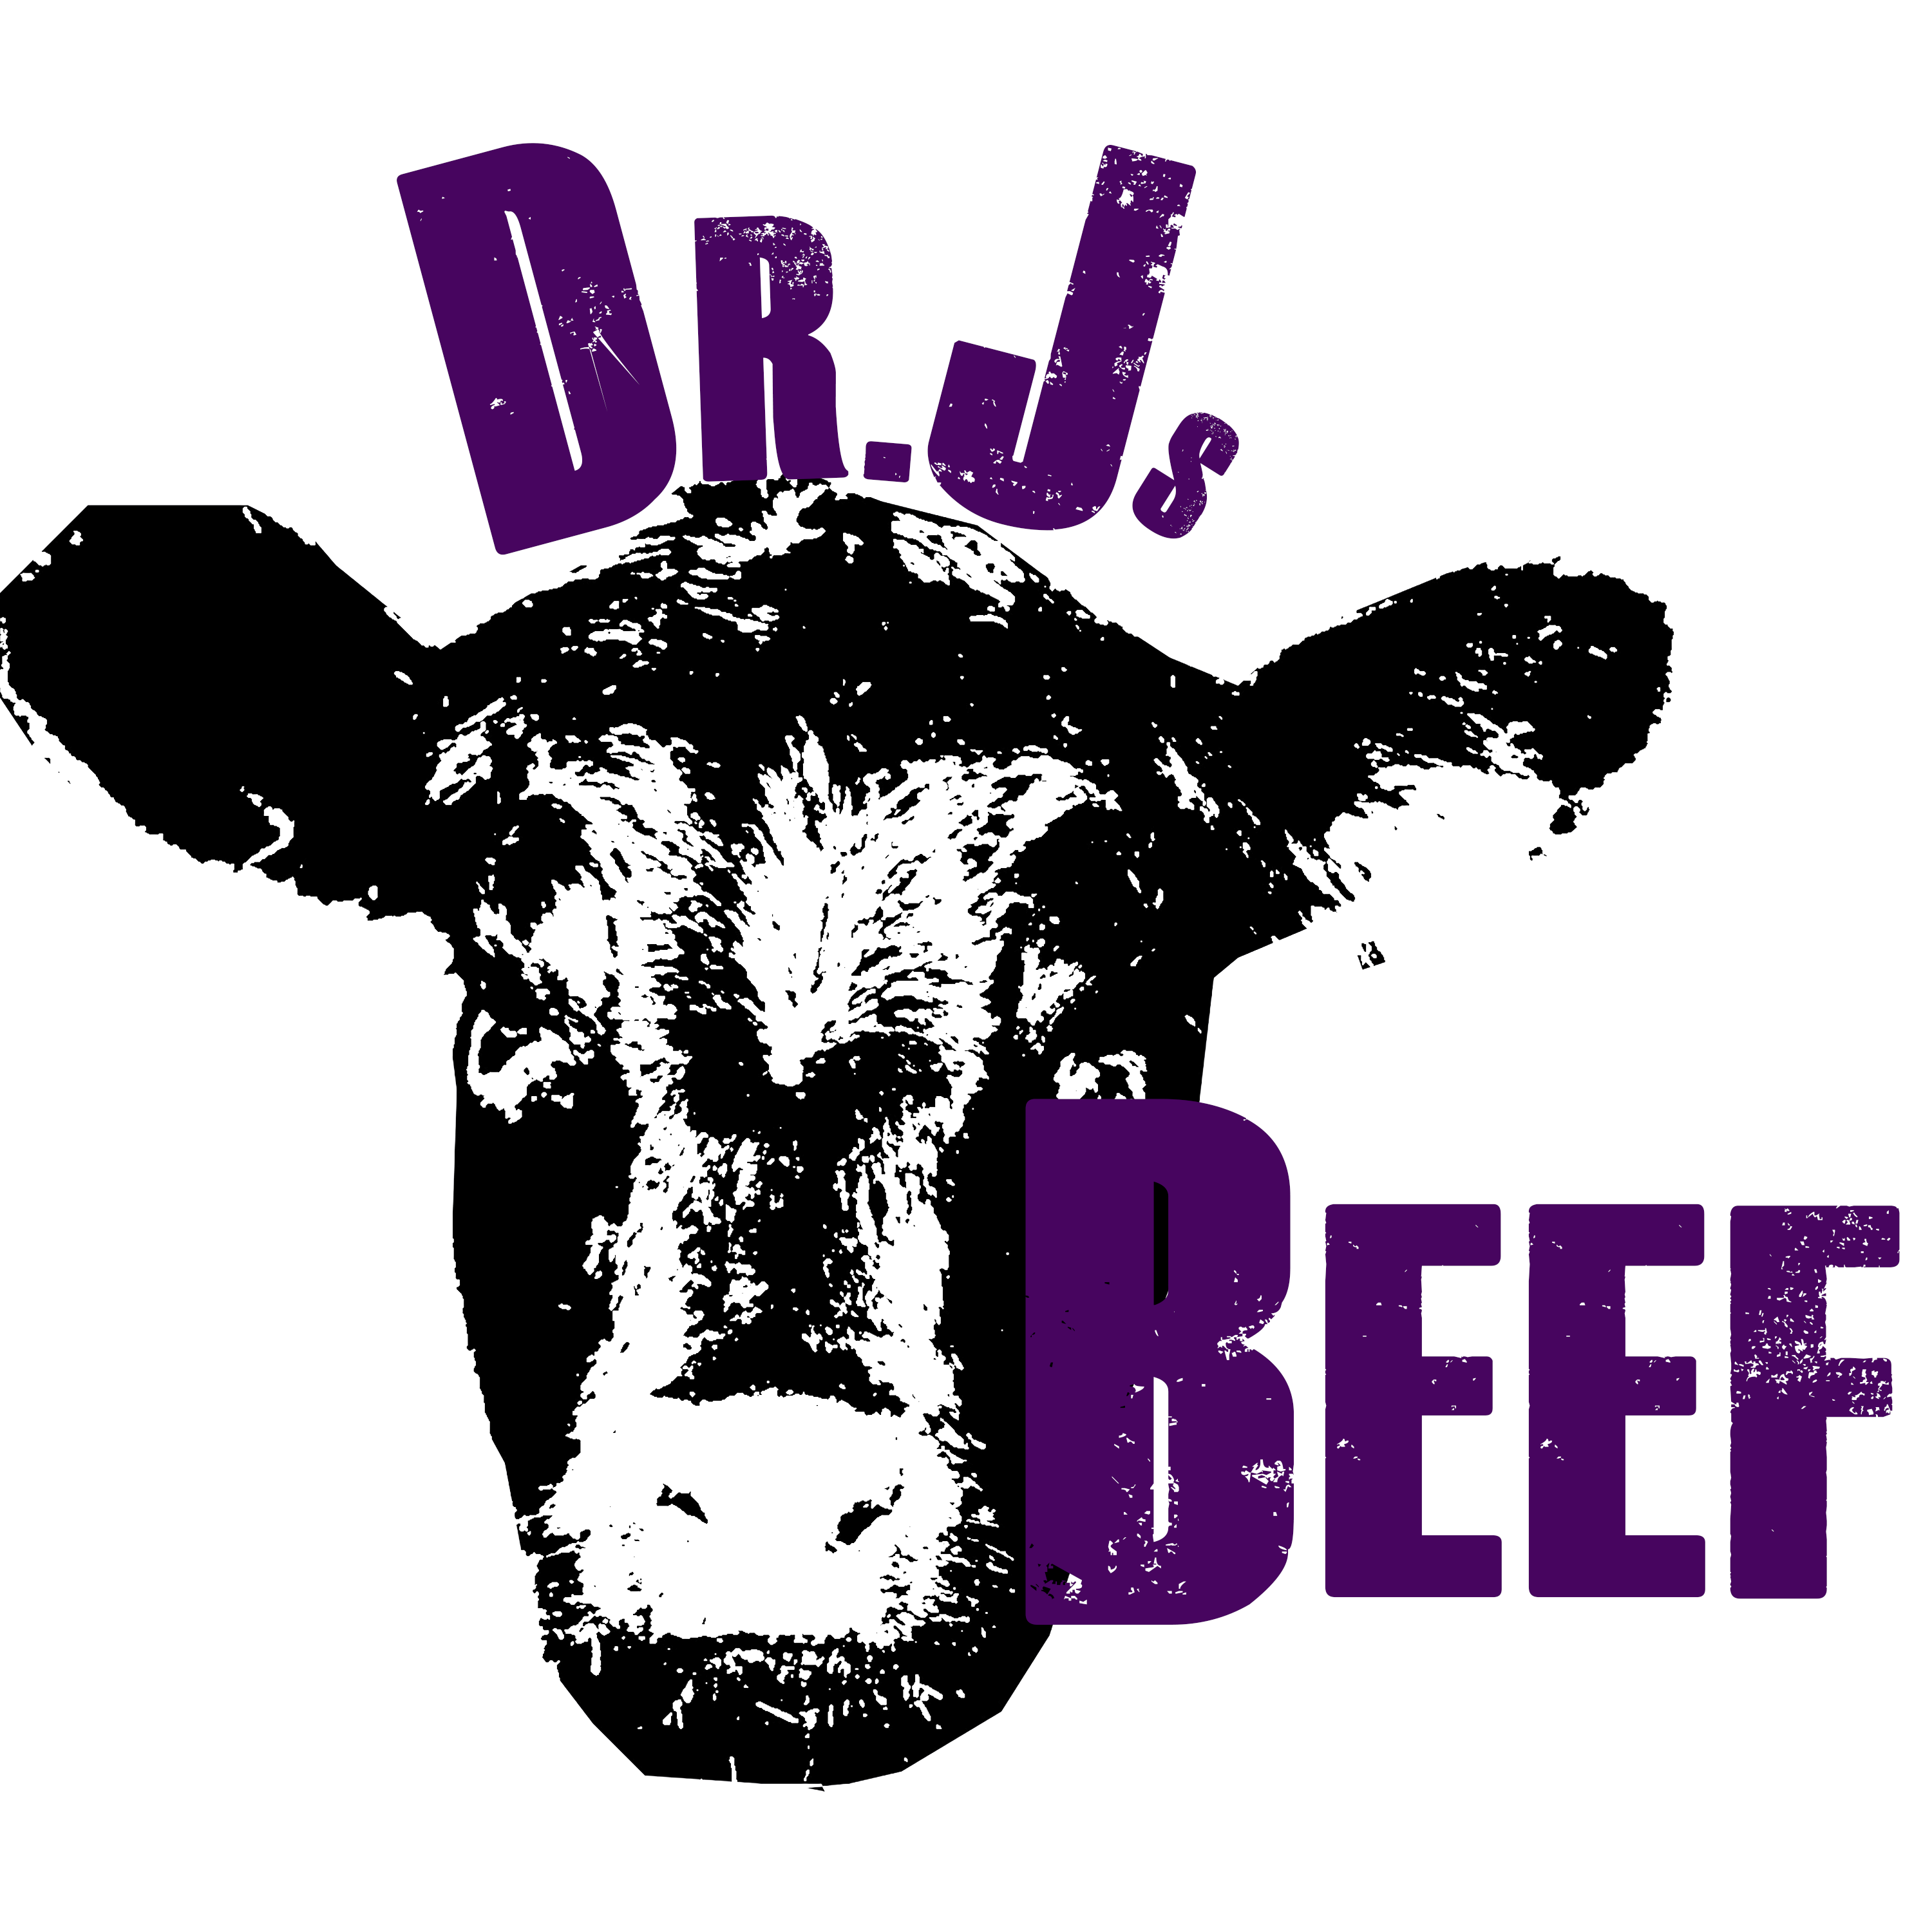 Dr Js Beef Podcast logo